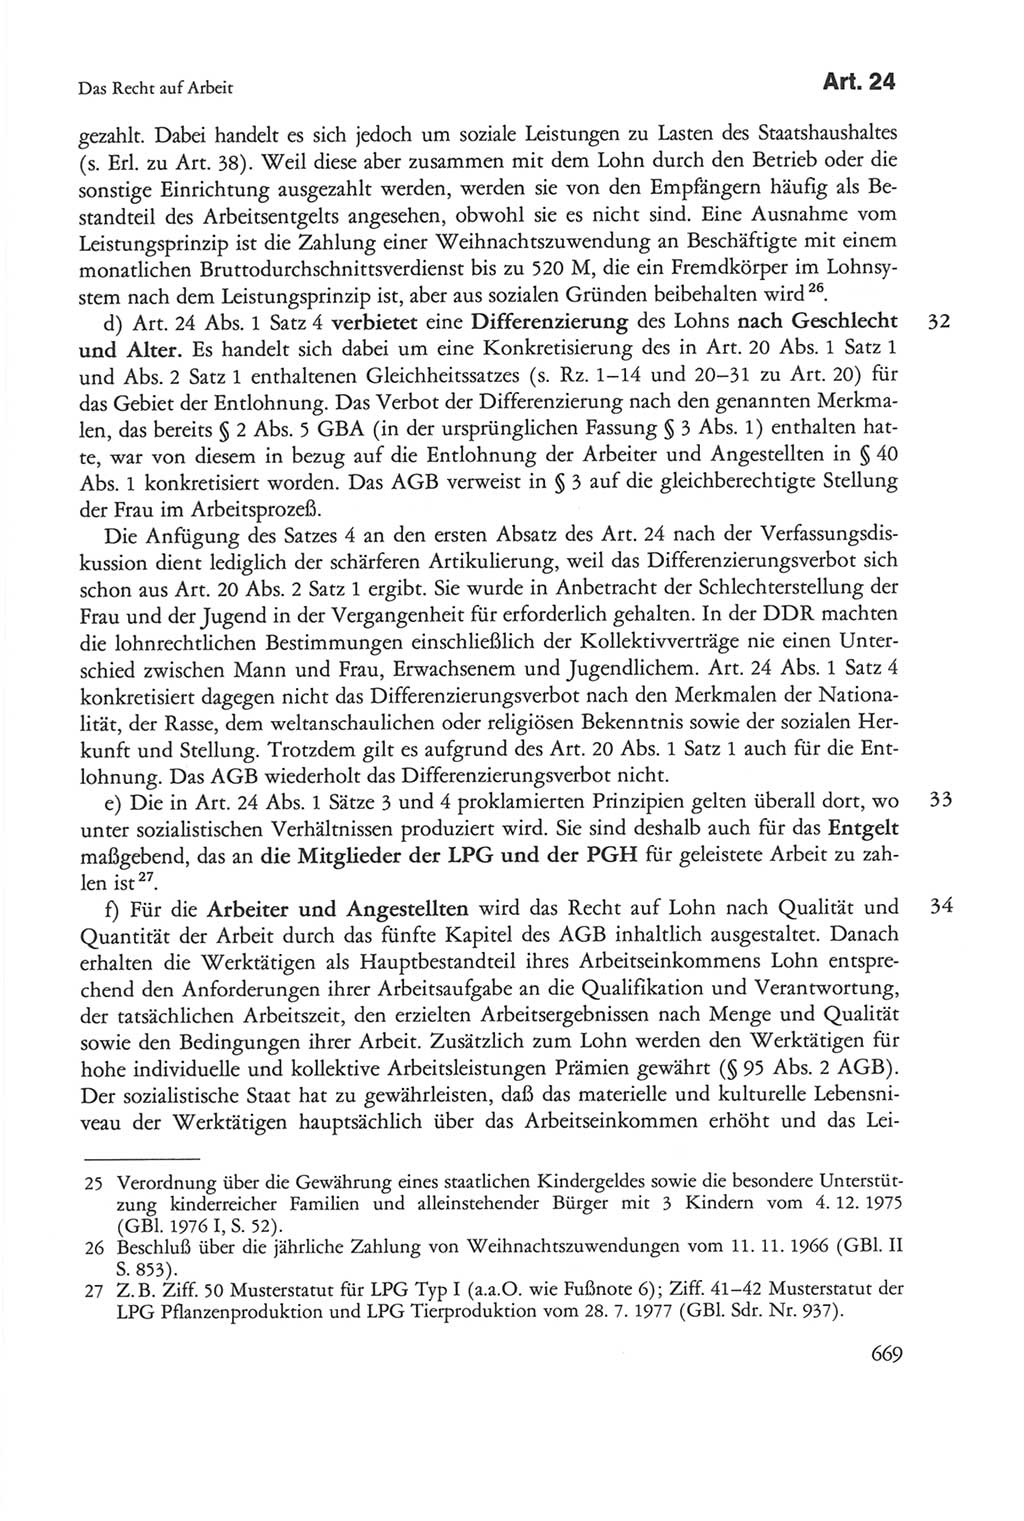 Die sozialistische Verfassung der Deutschen Demokratischen Republik (DDR), Kommentar mit einem Nachtrag 1997, Seite 669 (Soz. Verf. DDR Komm. Nachtr. 1997, S. 669)